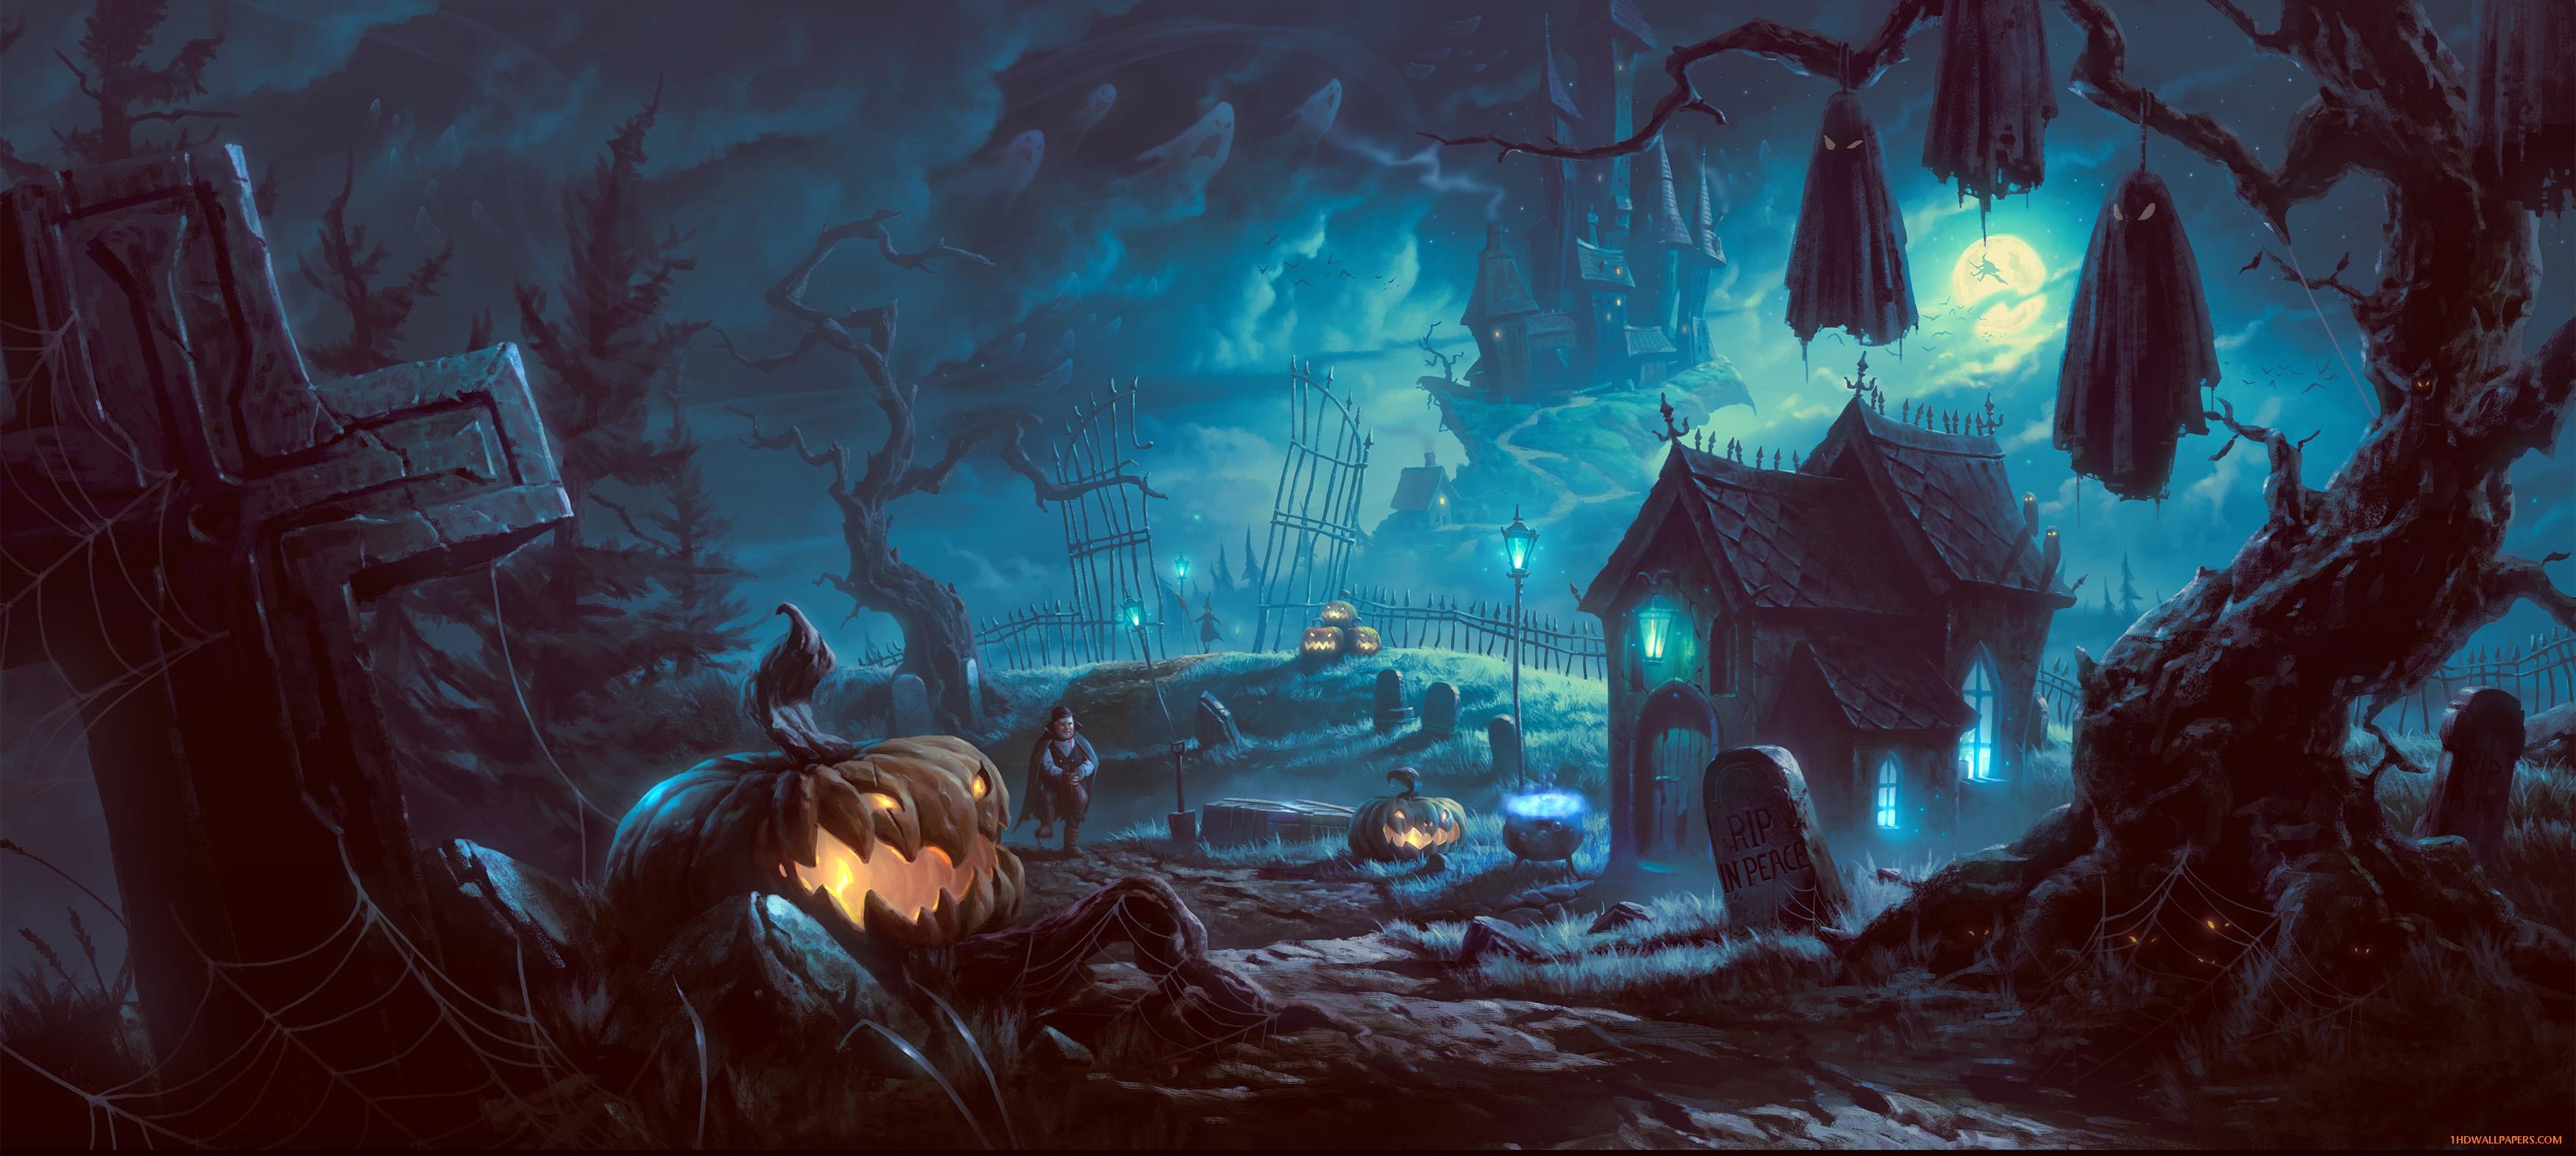 23+ Halloween backgrounds desktop ·① Download free amazing